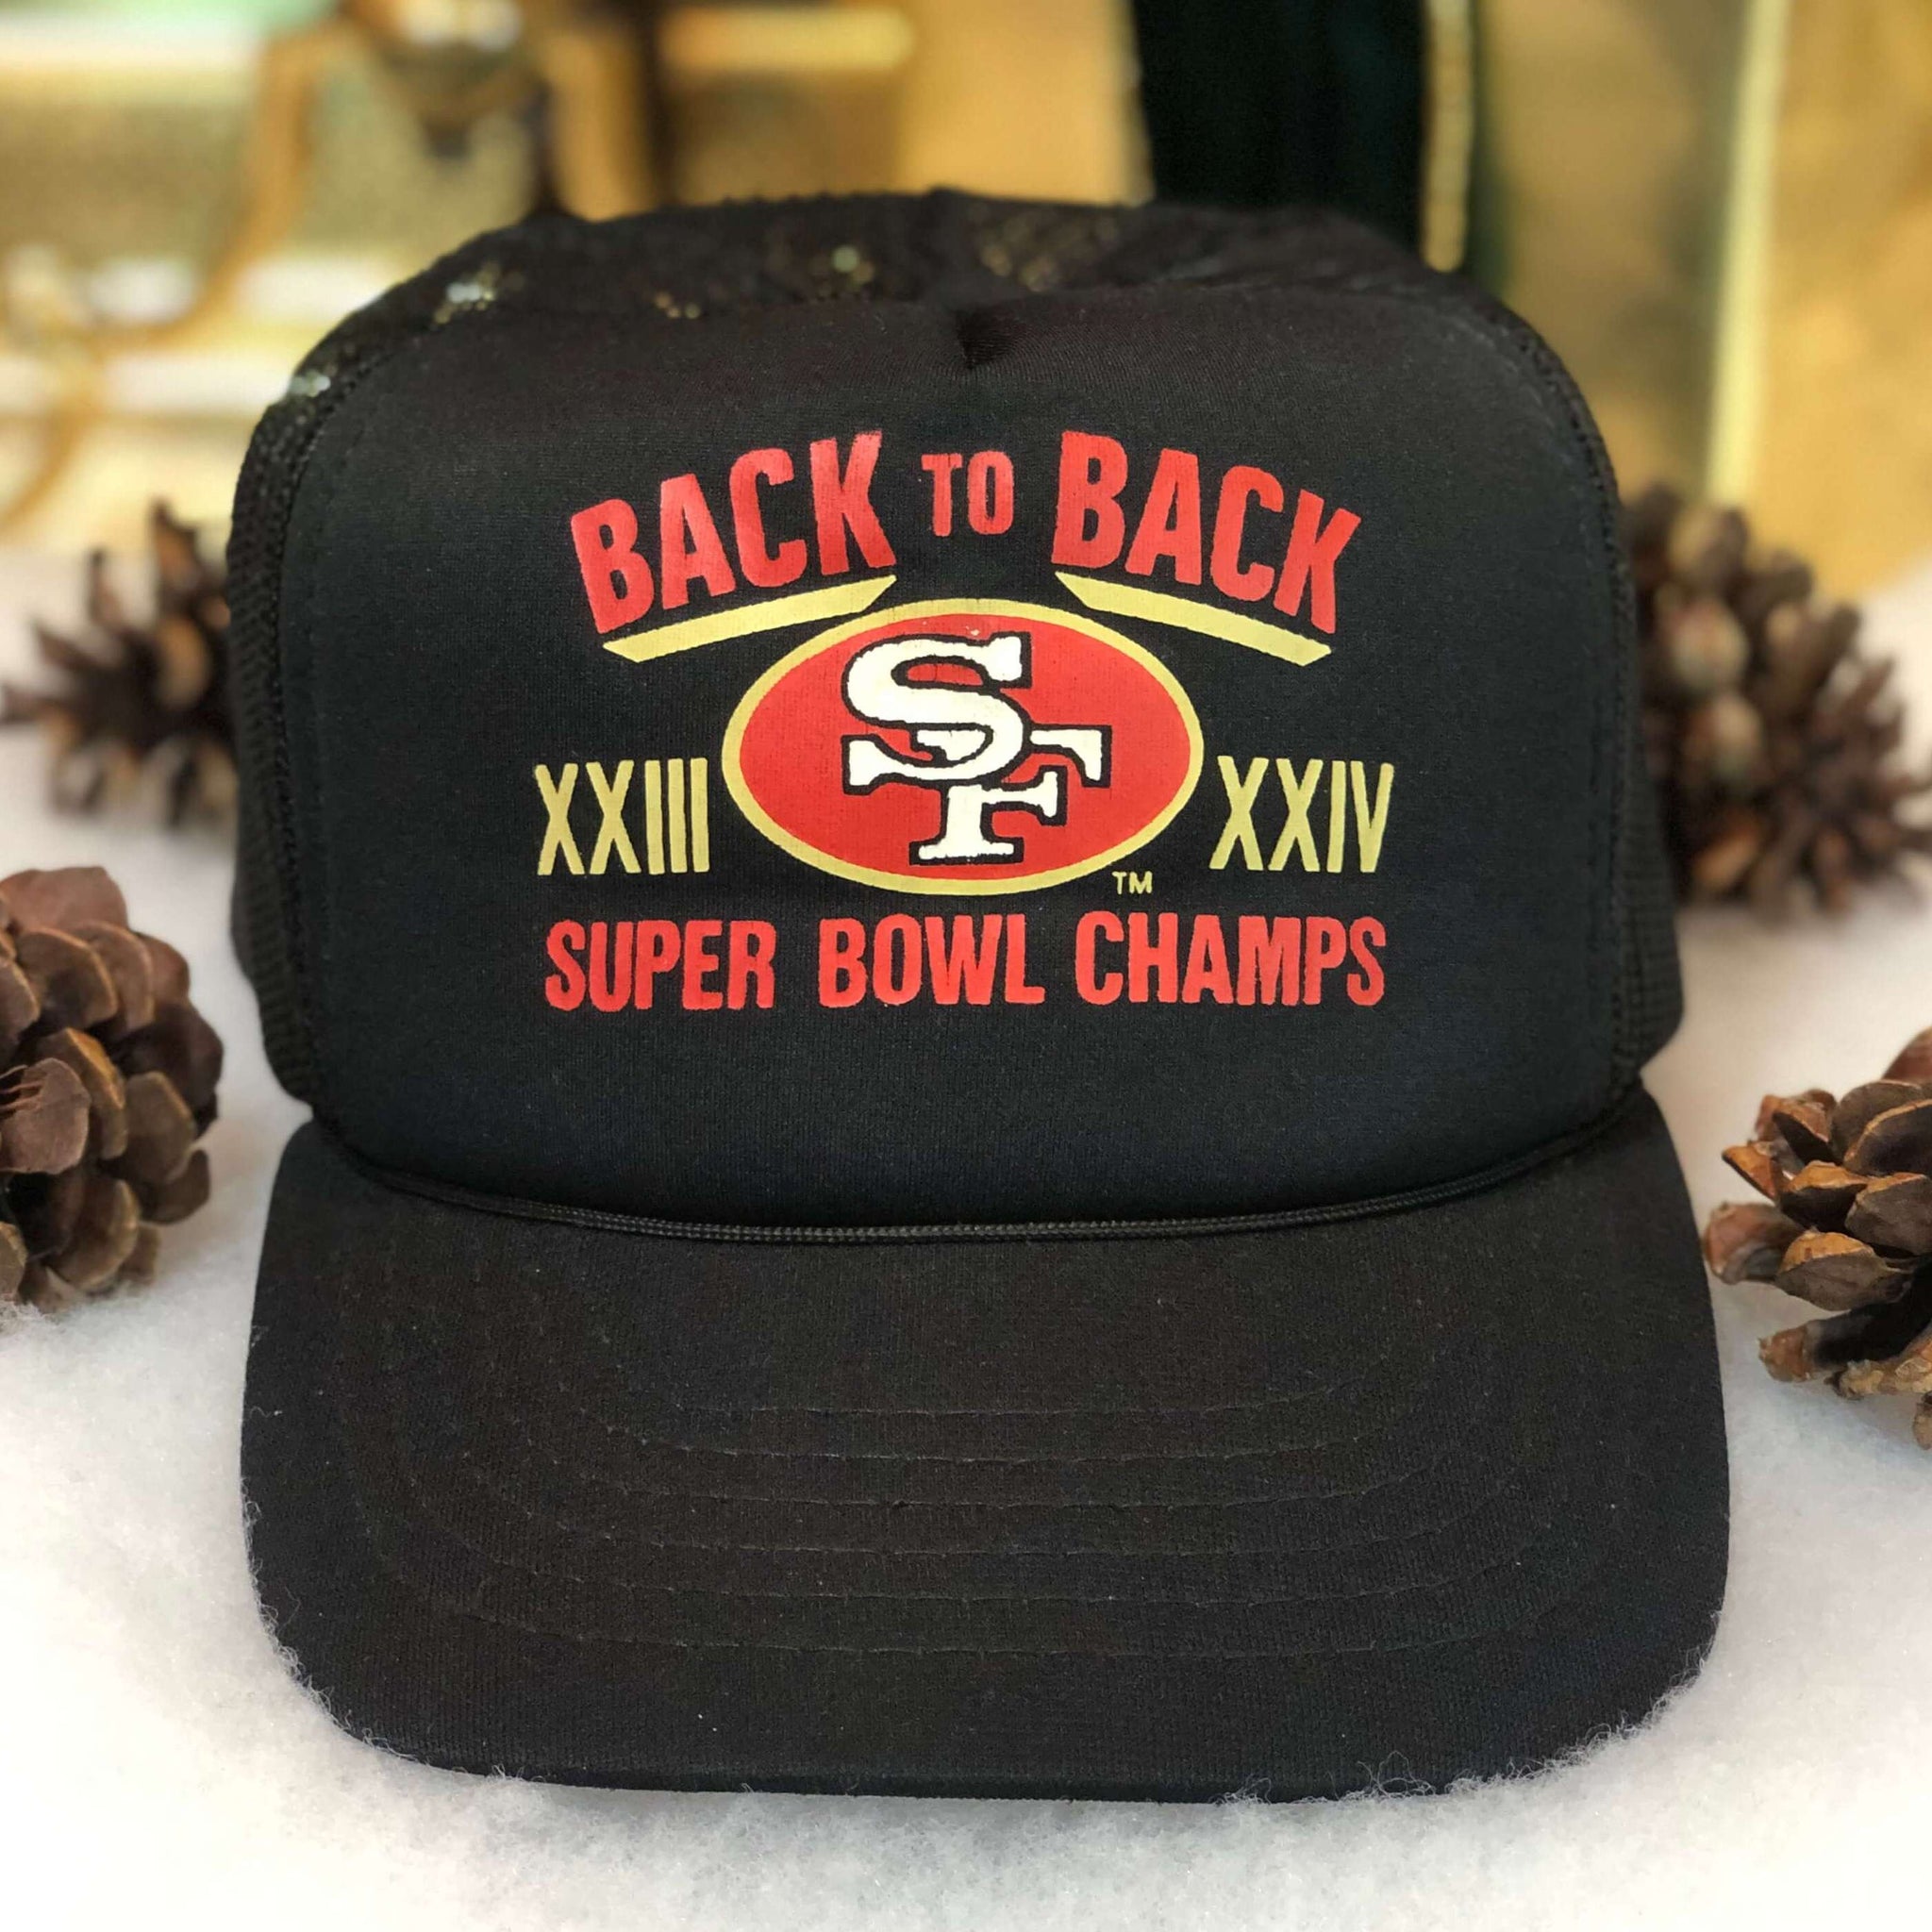 Vintage NFL San Francisco 49ers Back to Back Super Bowl Champs Trucker Hat